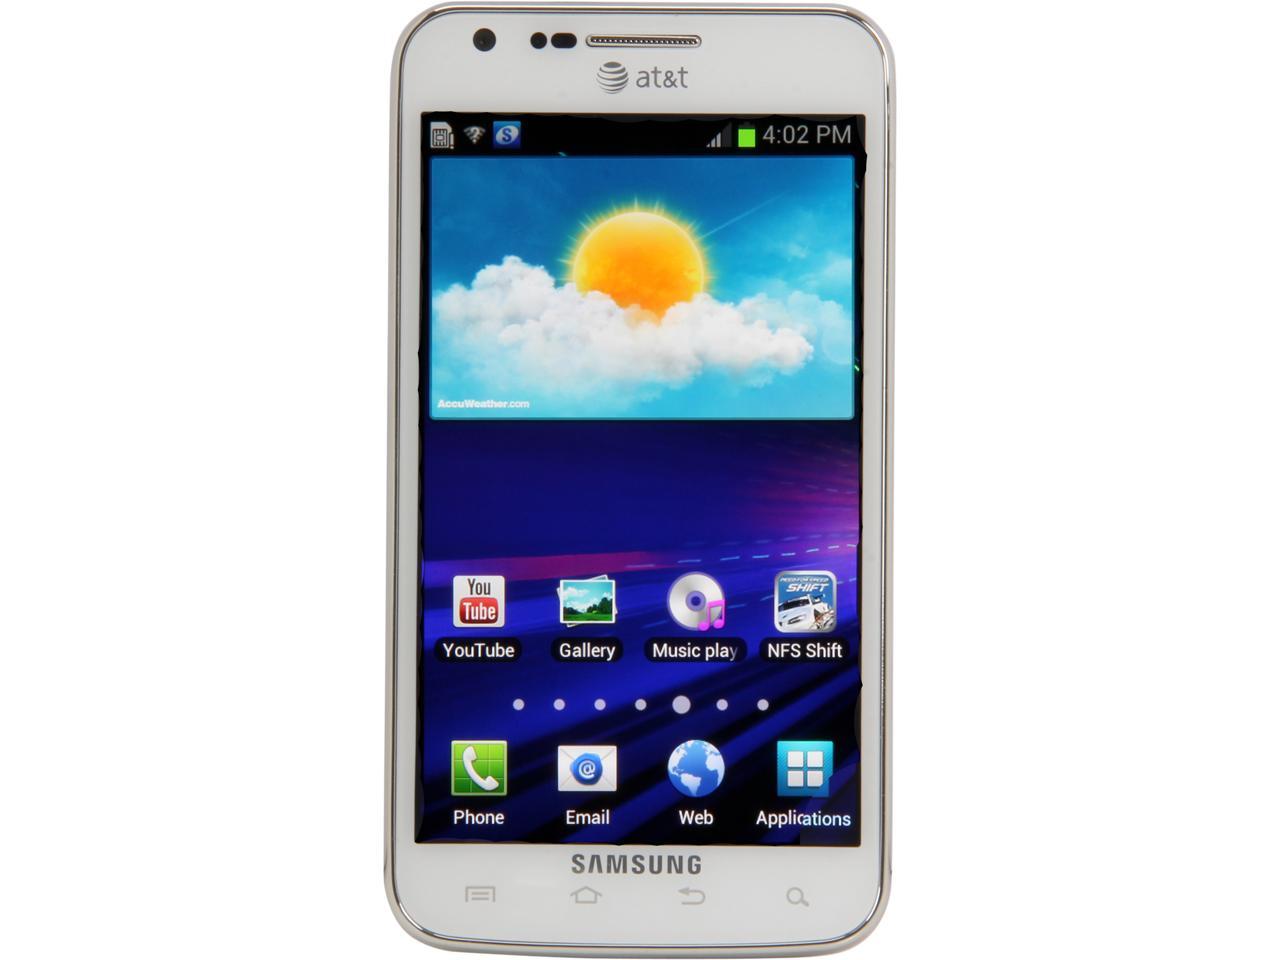 Samsung Galaxy S Ii Skyrocket Sgh I727 4g Lte 16gb Unlocked Cell Phone